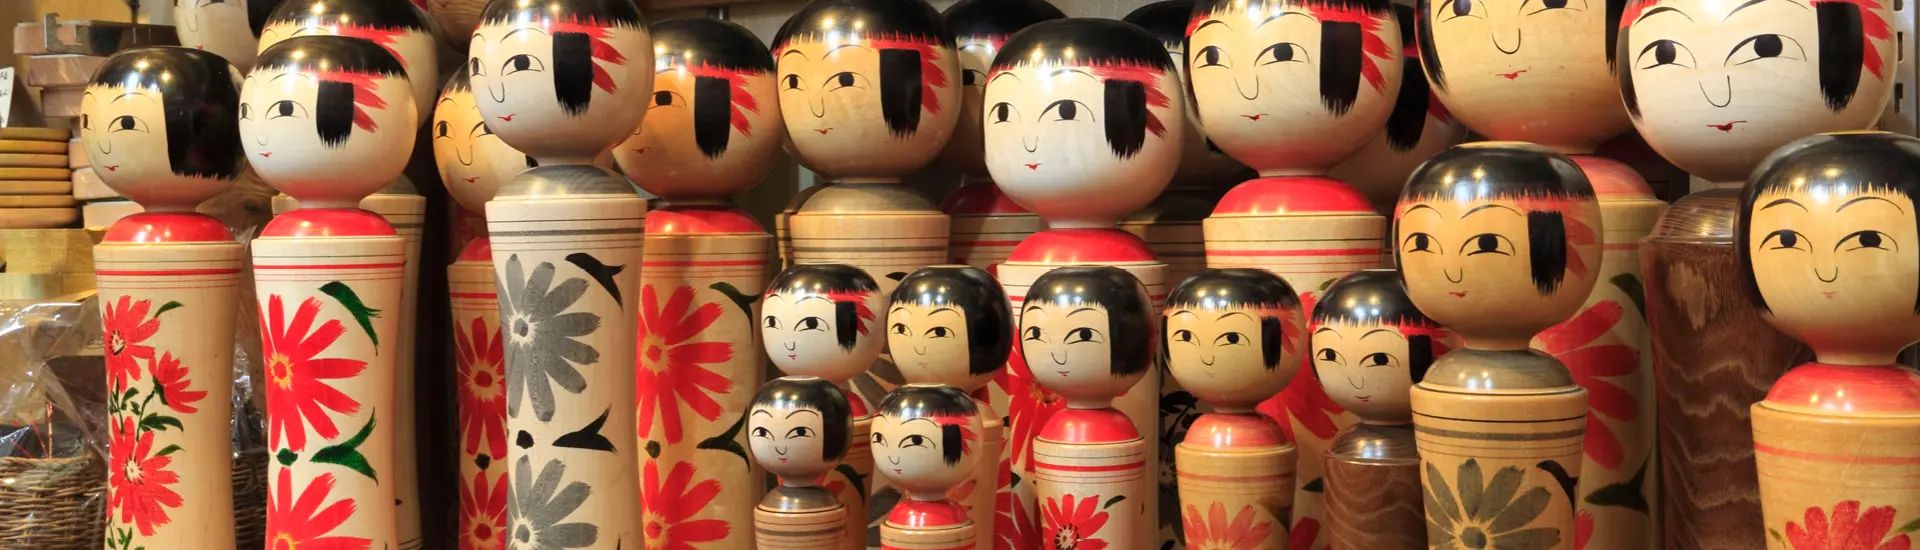 muñecas japonesas para vestir - Qué significado tienen las muñecas chinas